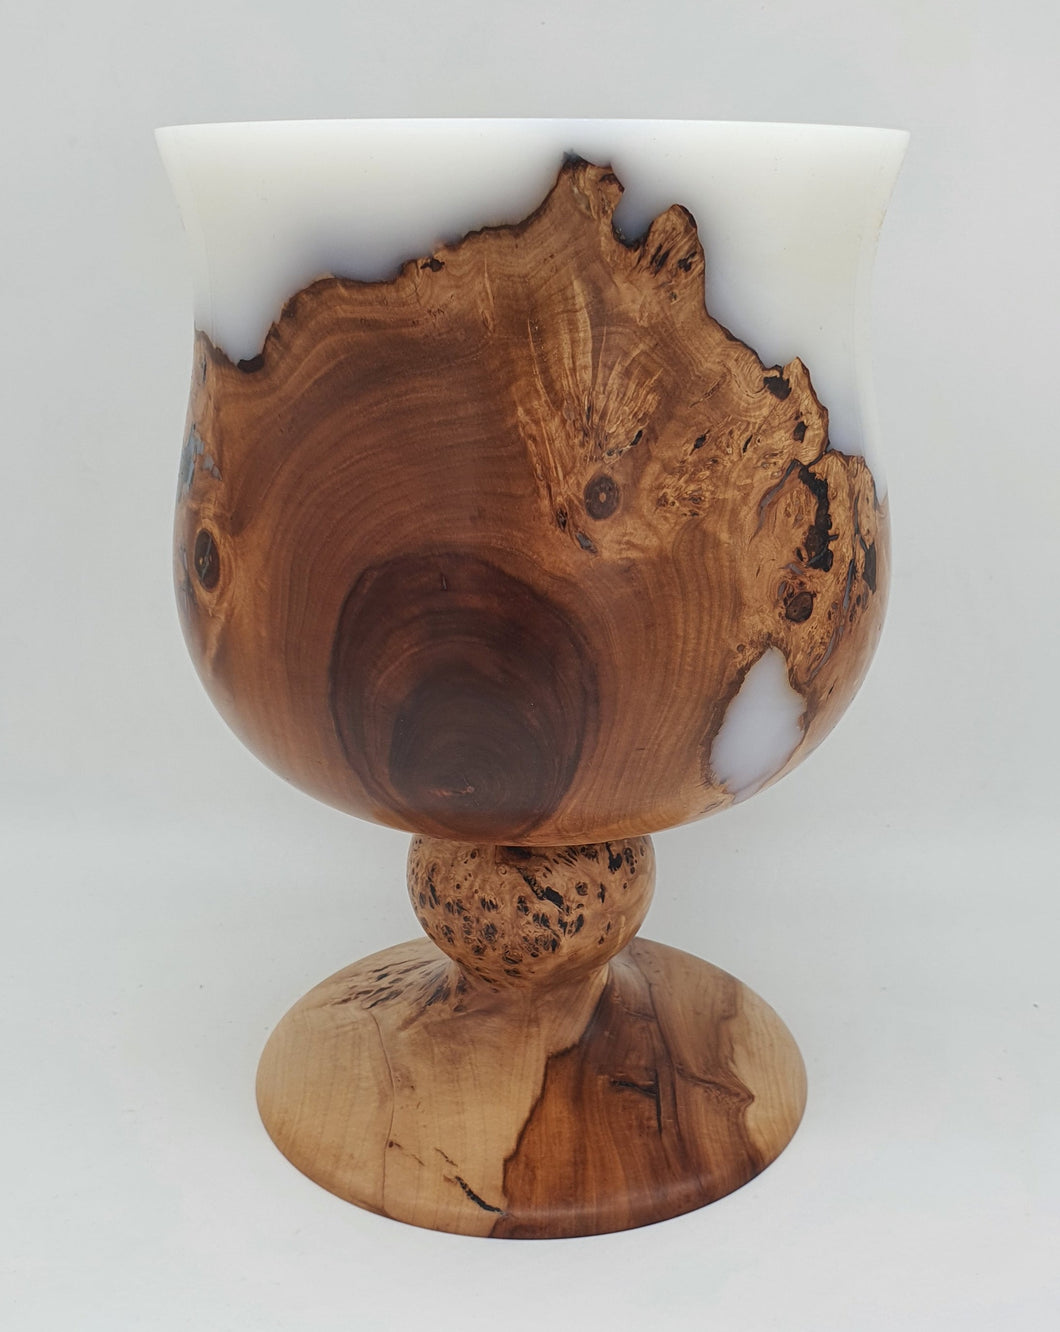 Applewood Vase